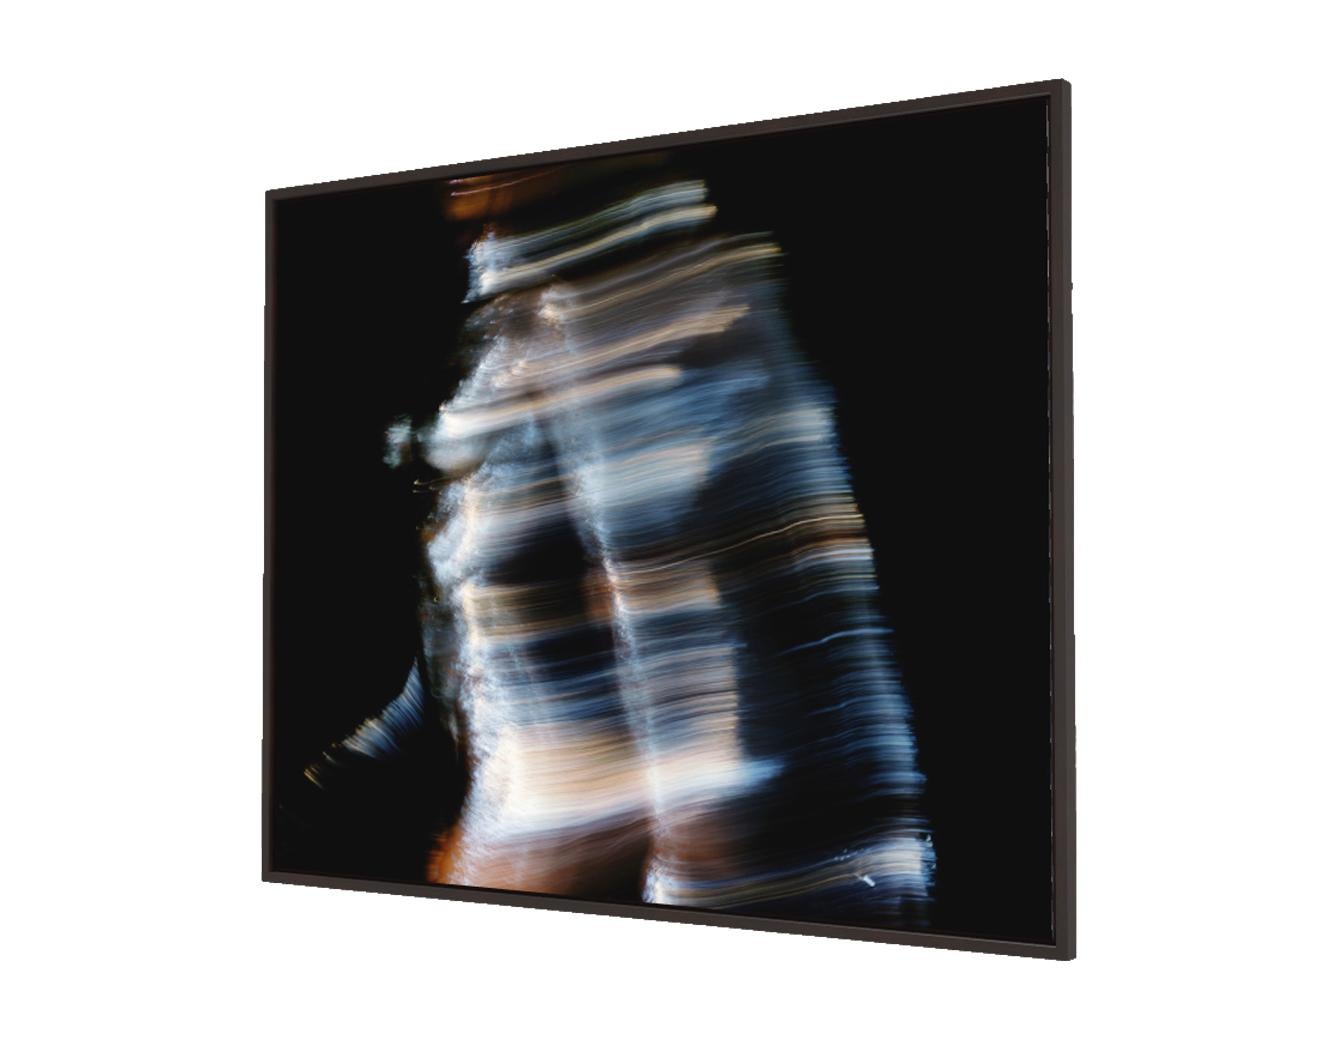 Laufendes Mädchen im Weltraum – Abstrakt-expressionistische Kunstfotografie (Schwarz), Black and White Photograph, von Roger Reist